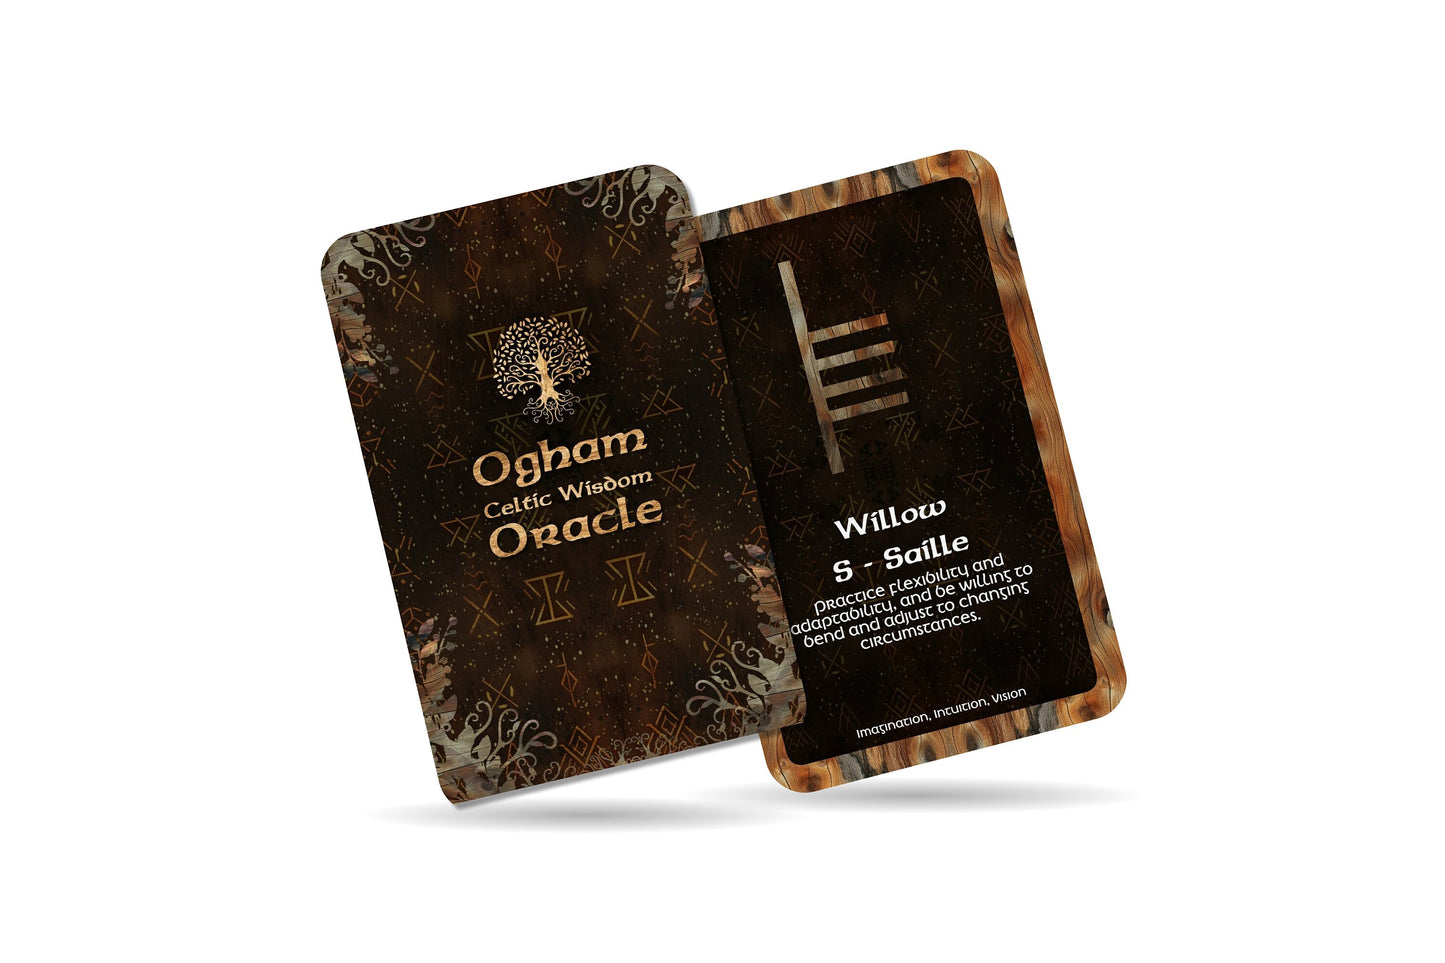 Celtic Wisdom - Ogham - Ancient Alphabet